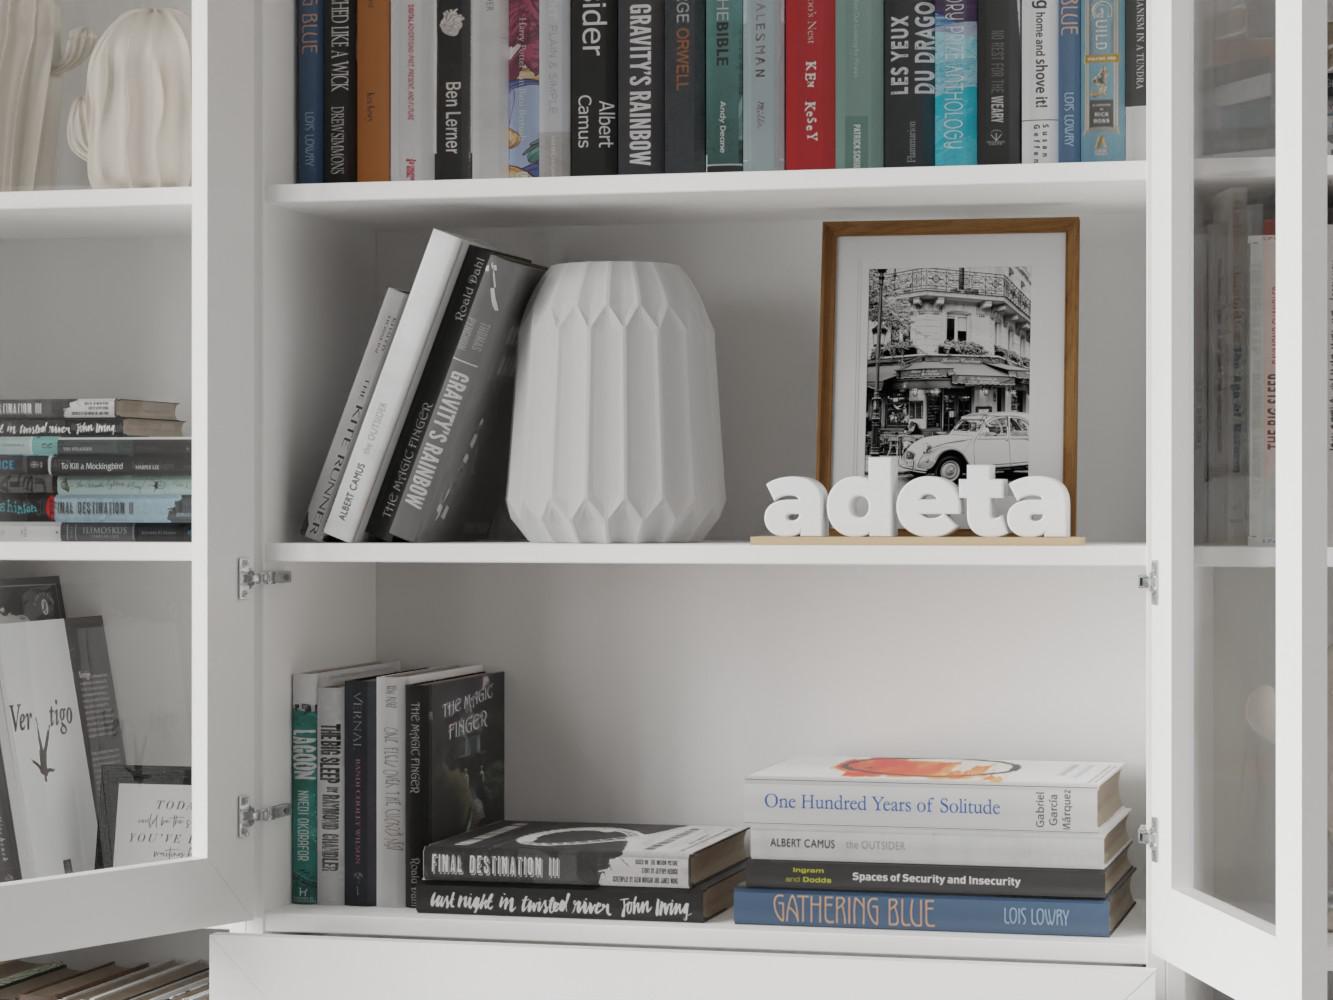 Изображение товара Книжный шкаф Билли 364 white ИКЕА (IKEA), 160x30x237 см на сайте adeta.ru